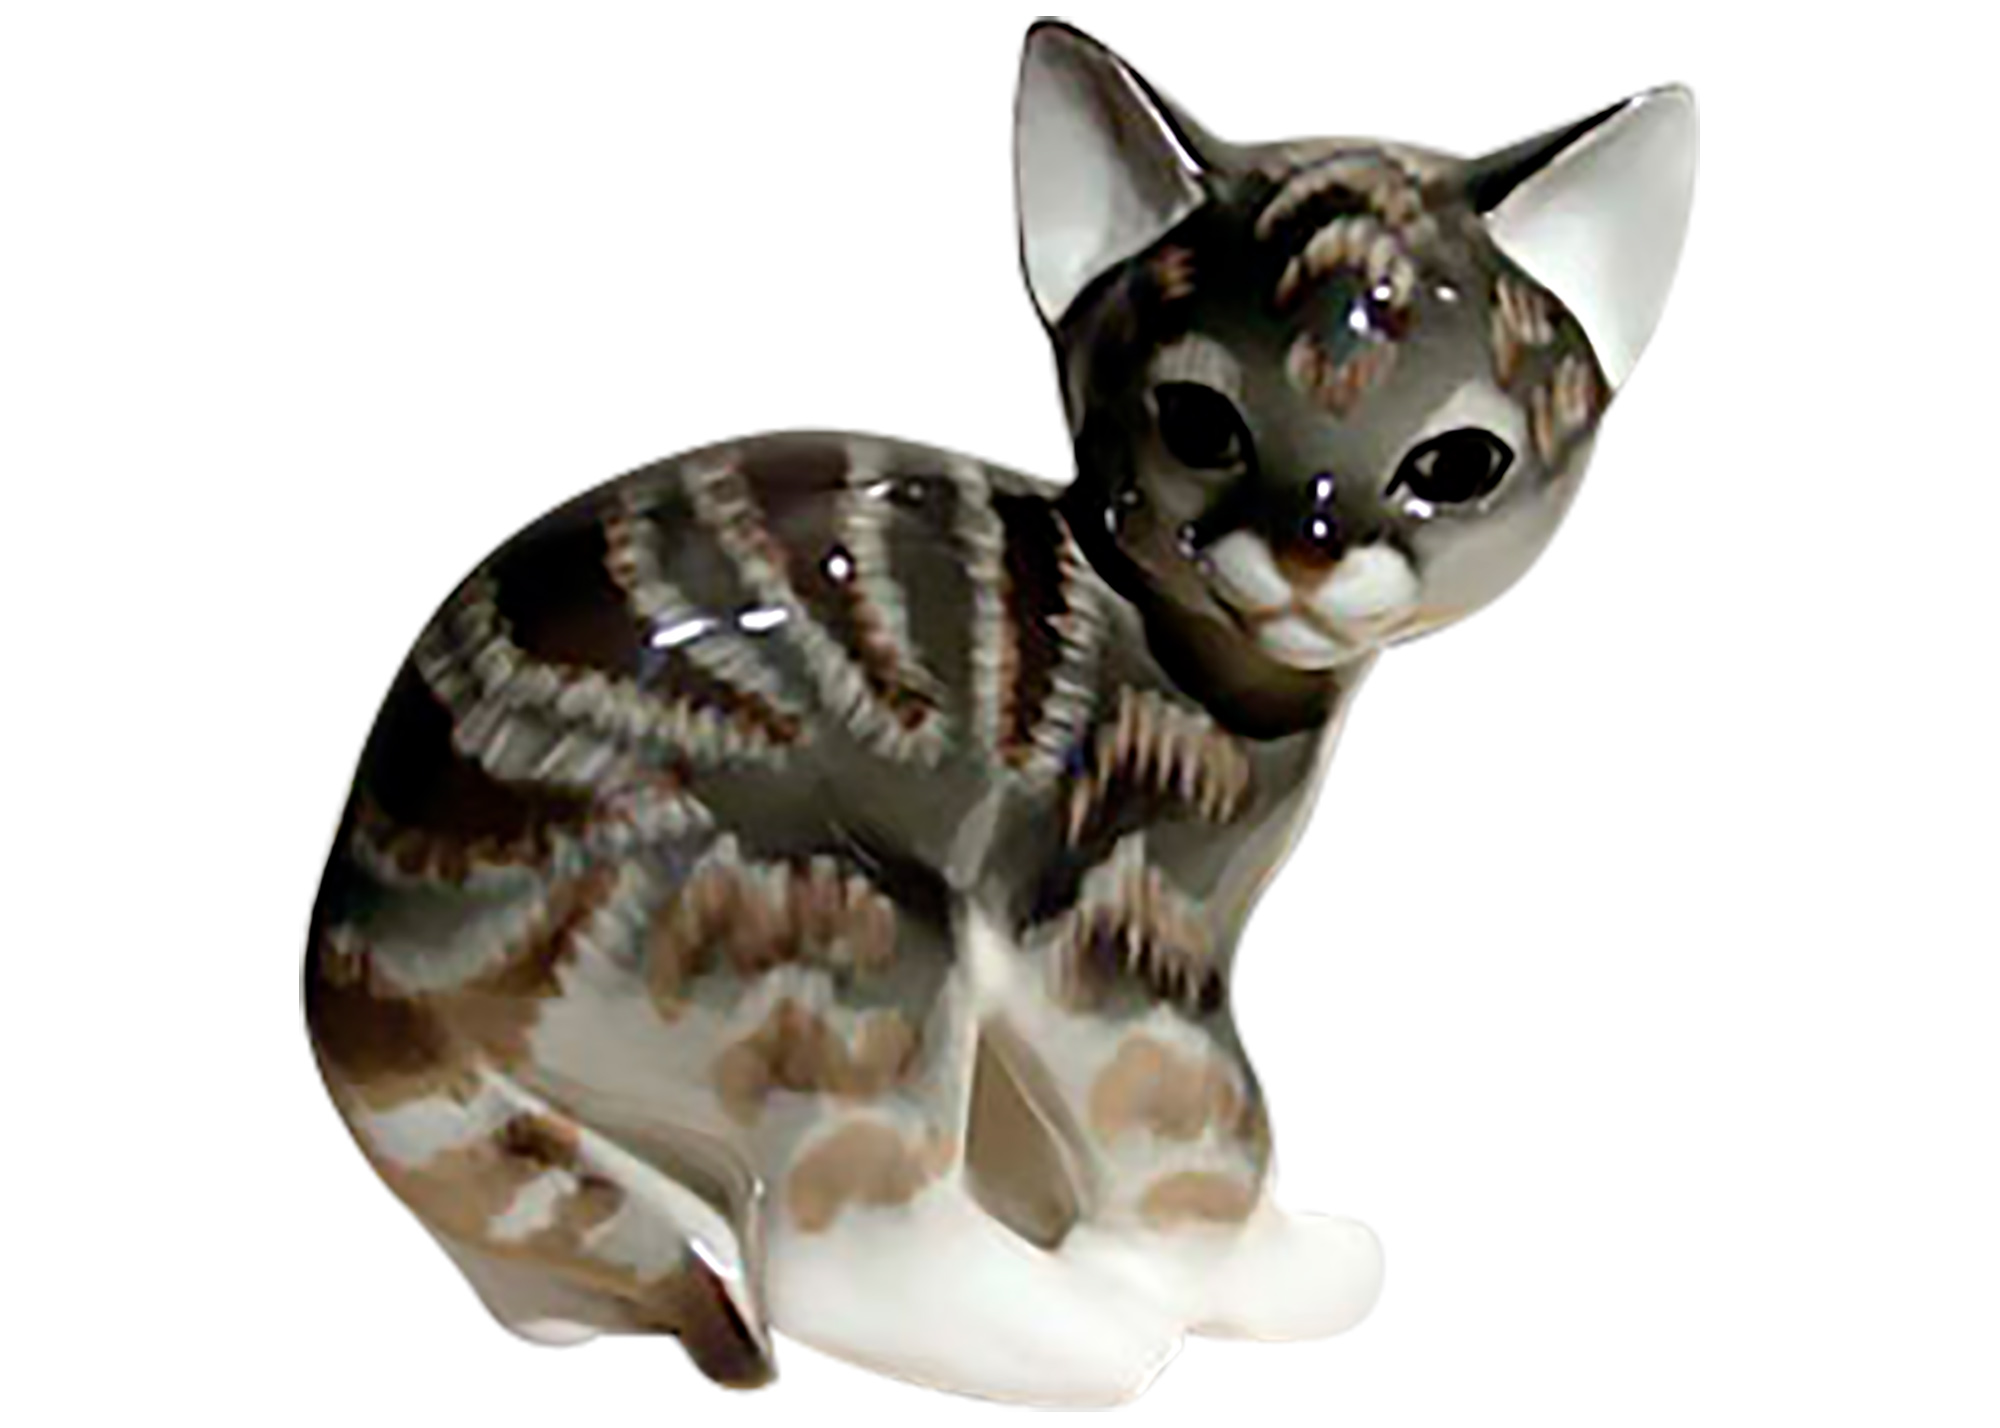 Buy Фарфоровая статуэтка "Кошка серая полосатая" at GoldenCockerel.com